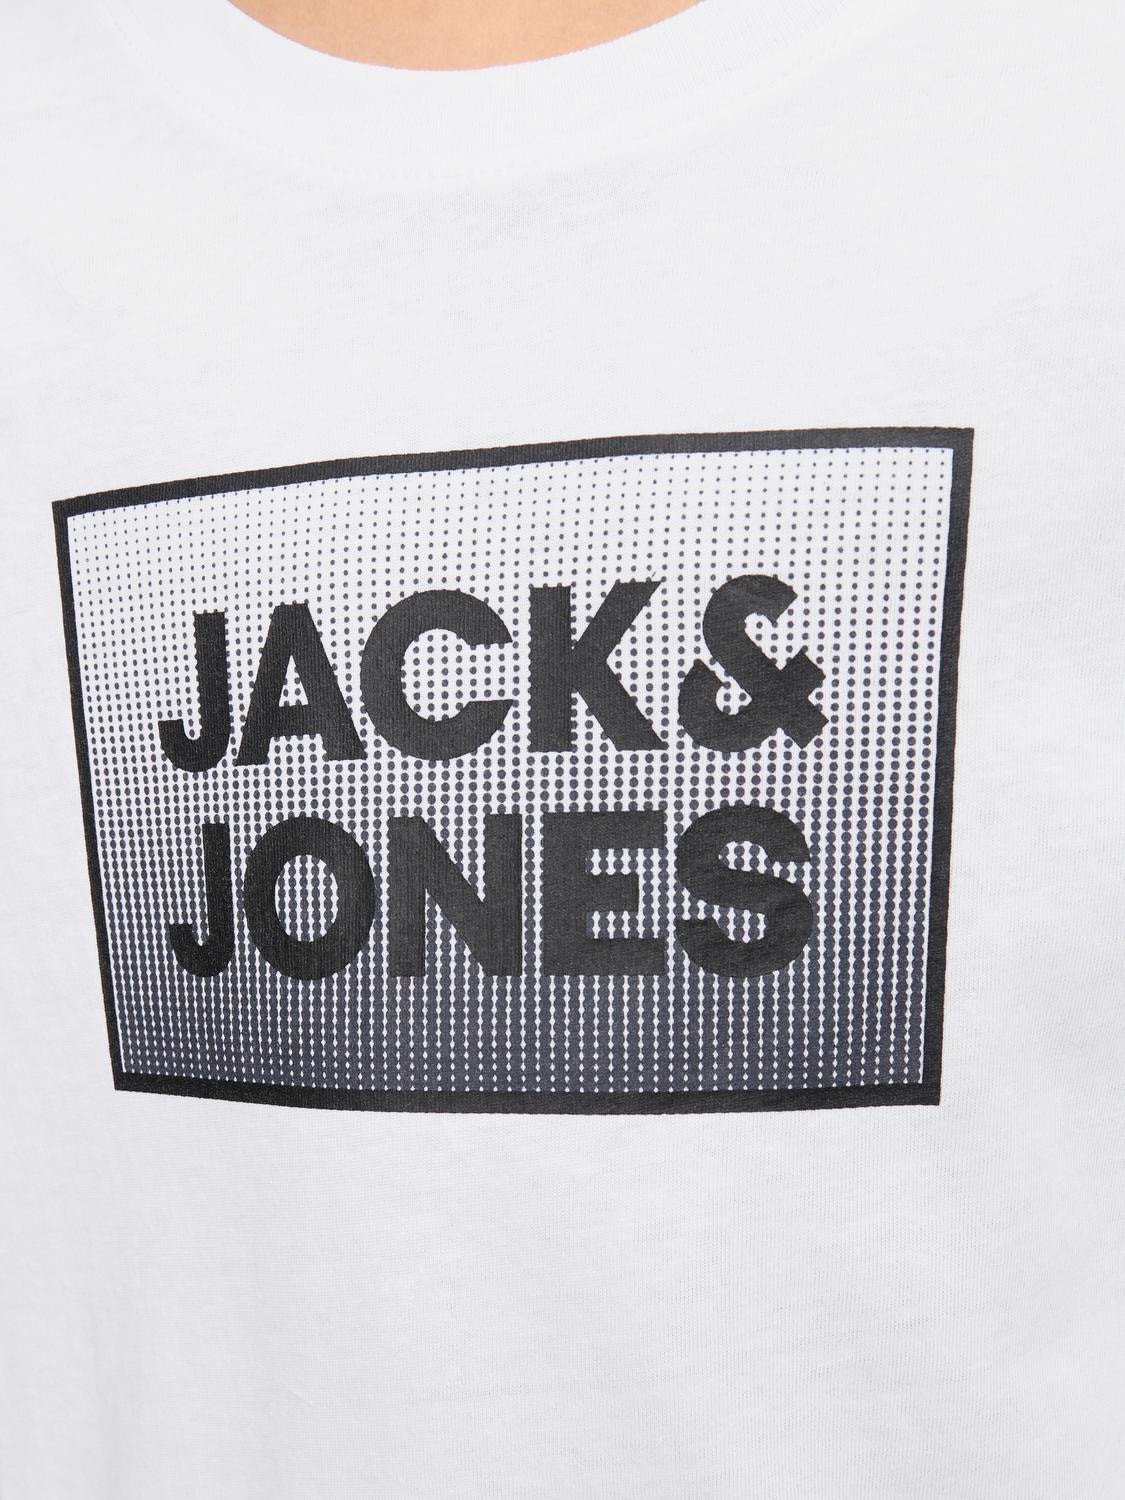 Jack & Jones Printed T-shirt For boys -White - 12249633